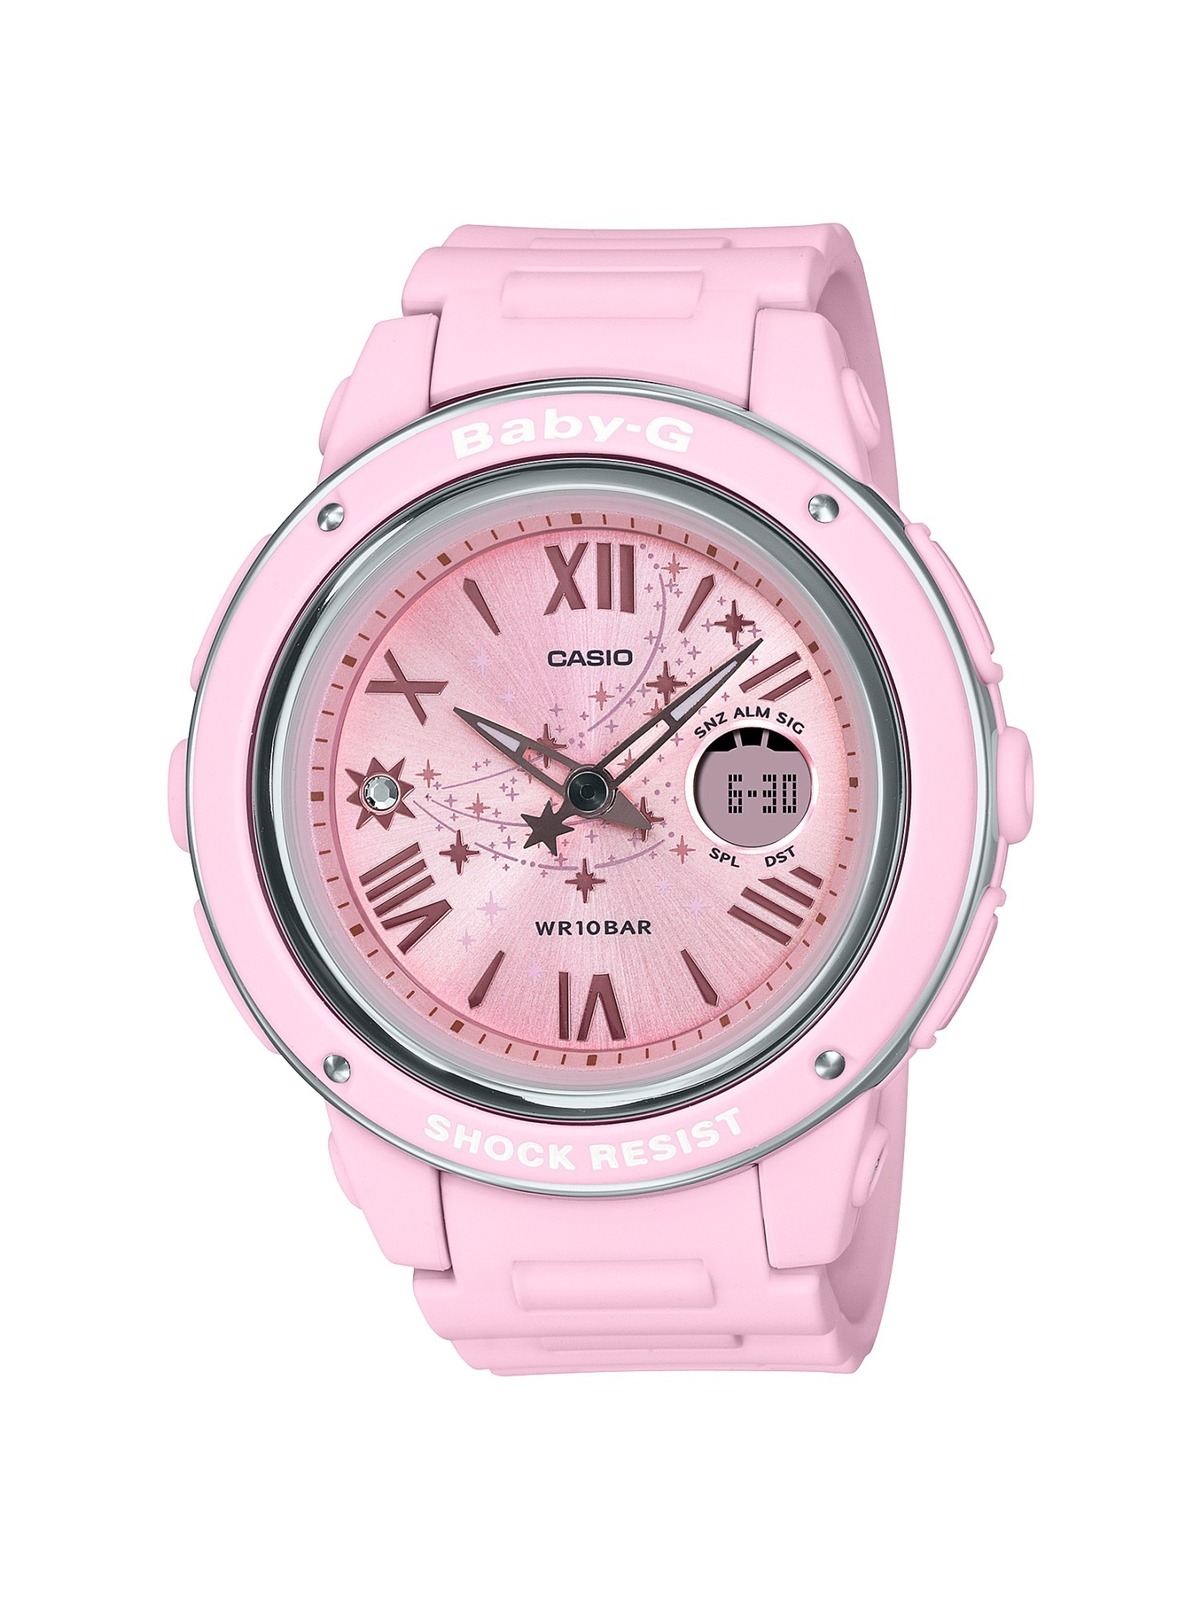 BABY-Gの新作腕時計「スター・ダイアルシリーズ」“流れ星 